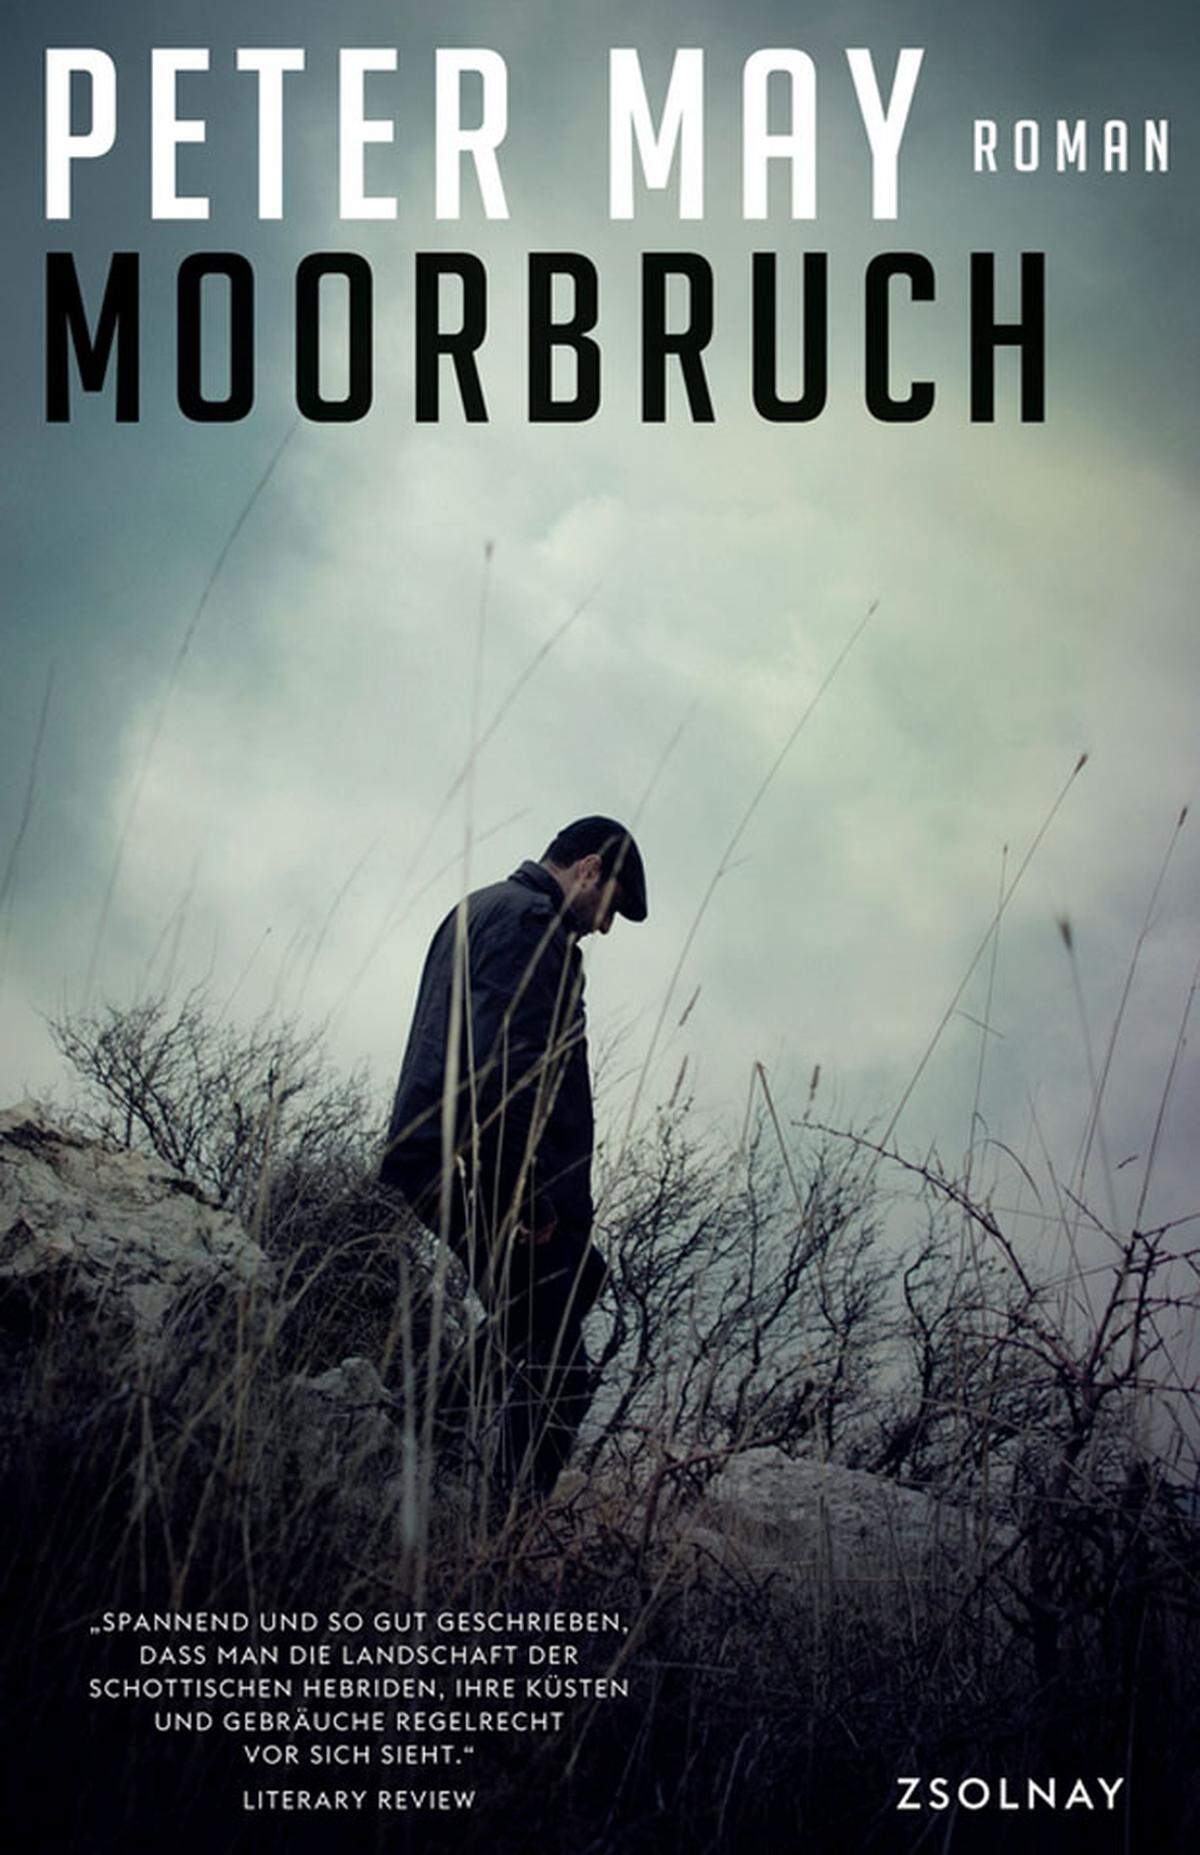 "Moorbruch" ist ein wunderbarer Kriminalroman, der von lebensechten Charakteren, kargen Landschaften und einer außergewöhnlichen Handlung mit zahlreichen Wendungen lebt. May ist ein begnadeter Erzähler, das spürt man schon nach wenigen Seiten. Hat er einen einmal gepackt, lässt er einen auch nicht mehr los. Worum es geht? 17 Jahre sind vergangen, seit Roddy Mackenzie verschwunden ist. Doch ein Moorbruch fördert das Wrack von Mackenzies Flugzeug zu Tage. Ex-Polizist Fin Macleod (um den sich die Serie dreht), der Mackenzie einst kannte, beginnt zu ermitteln. Dabei verwebt der Autor gekonnt teilweise zwei Jahrzehnte zurückliegende Ereignisse mit aktuellen Geschehnissen. Er entschlüsselt überzeugend ein in der Vergangenheit liegendes Geheimnis. Peter May: “Moorbruch”, übersetzt von Silvia Morawetz, 333 Seiten, Paul Zsolnay Verlag.